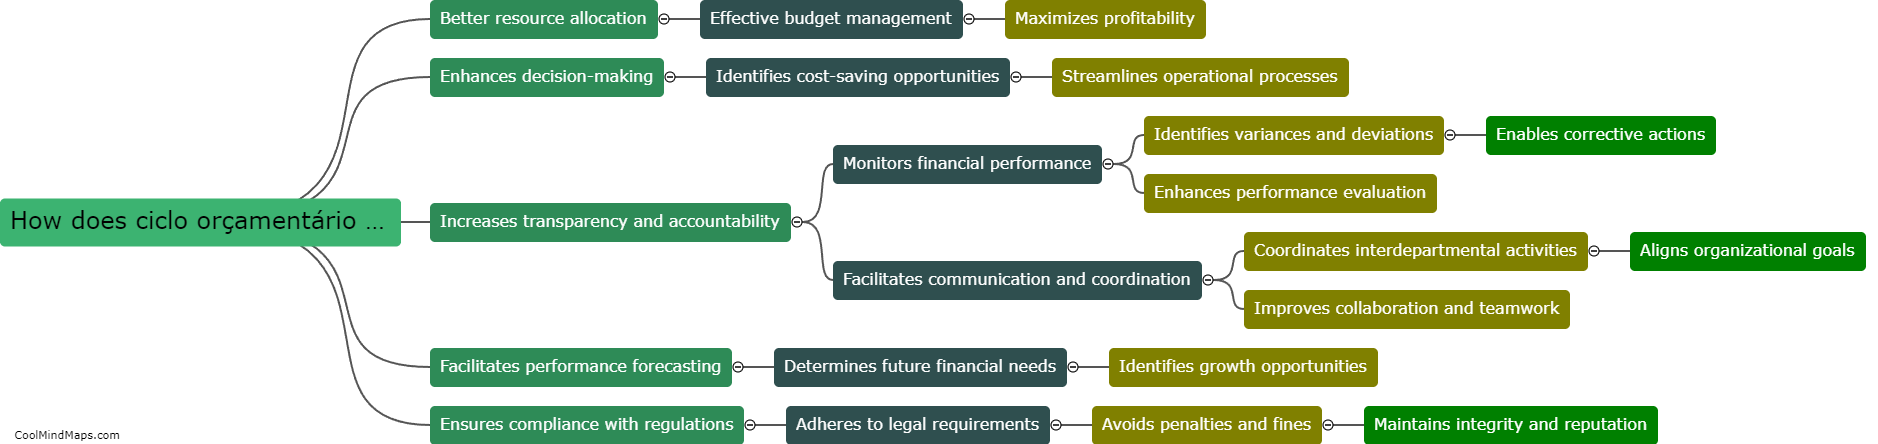 How does ciclo orçamentário benefit an organization?